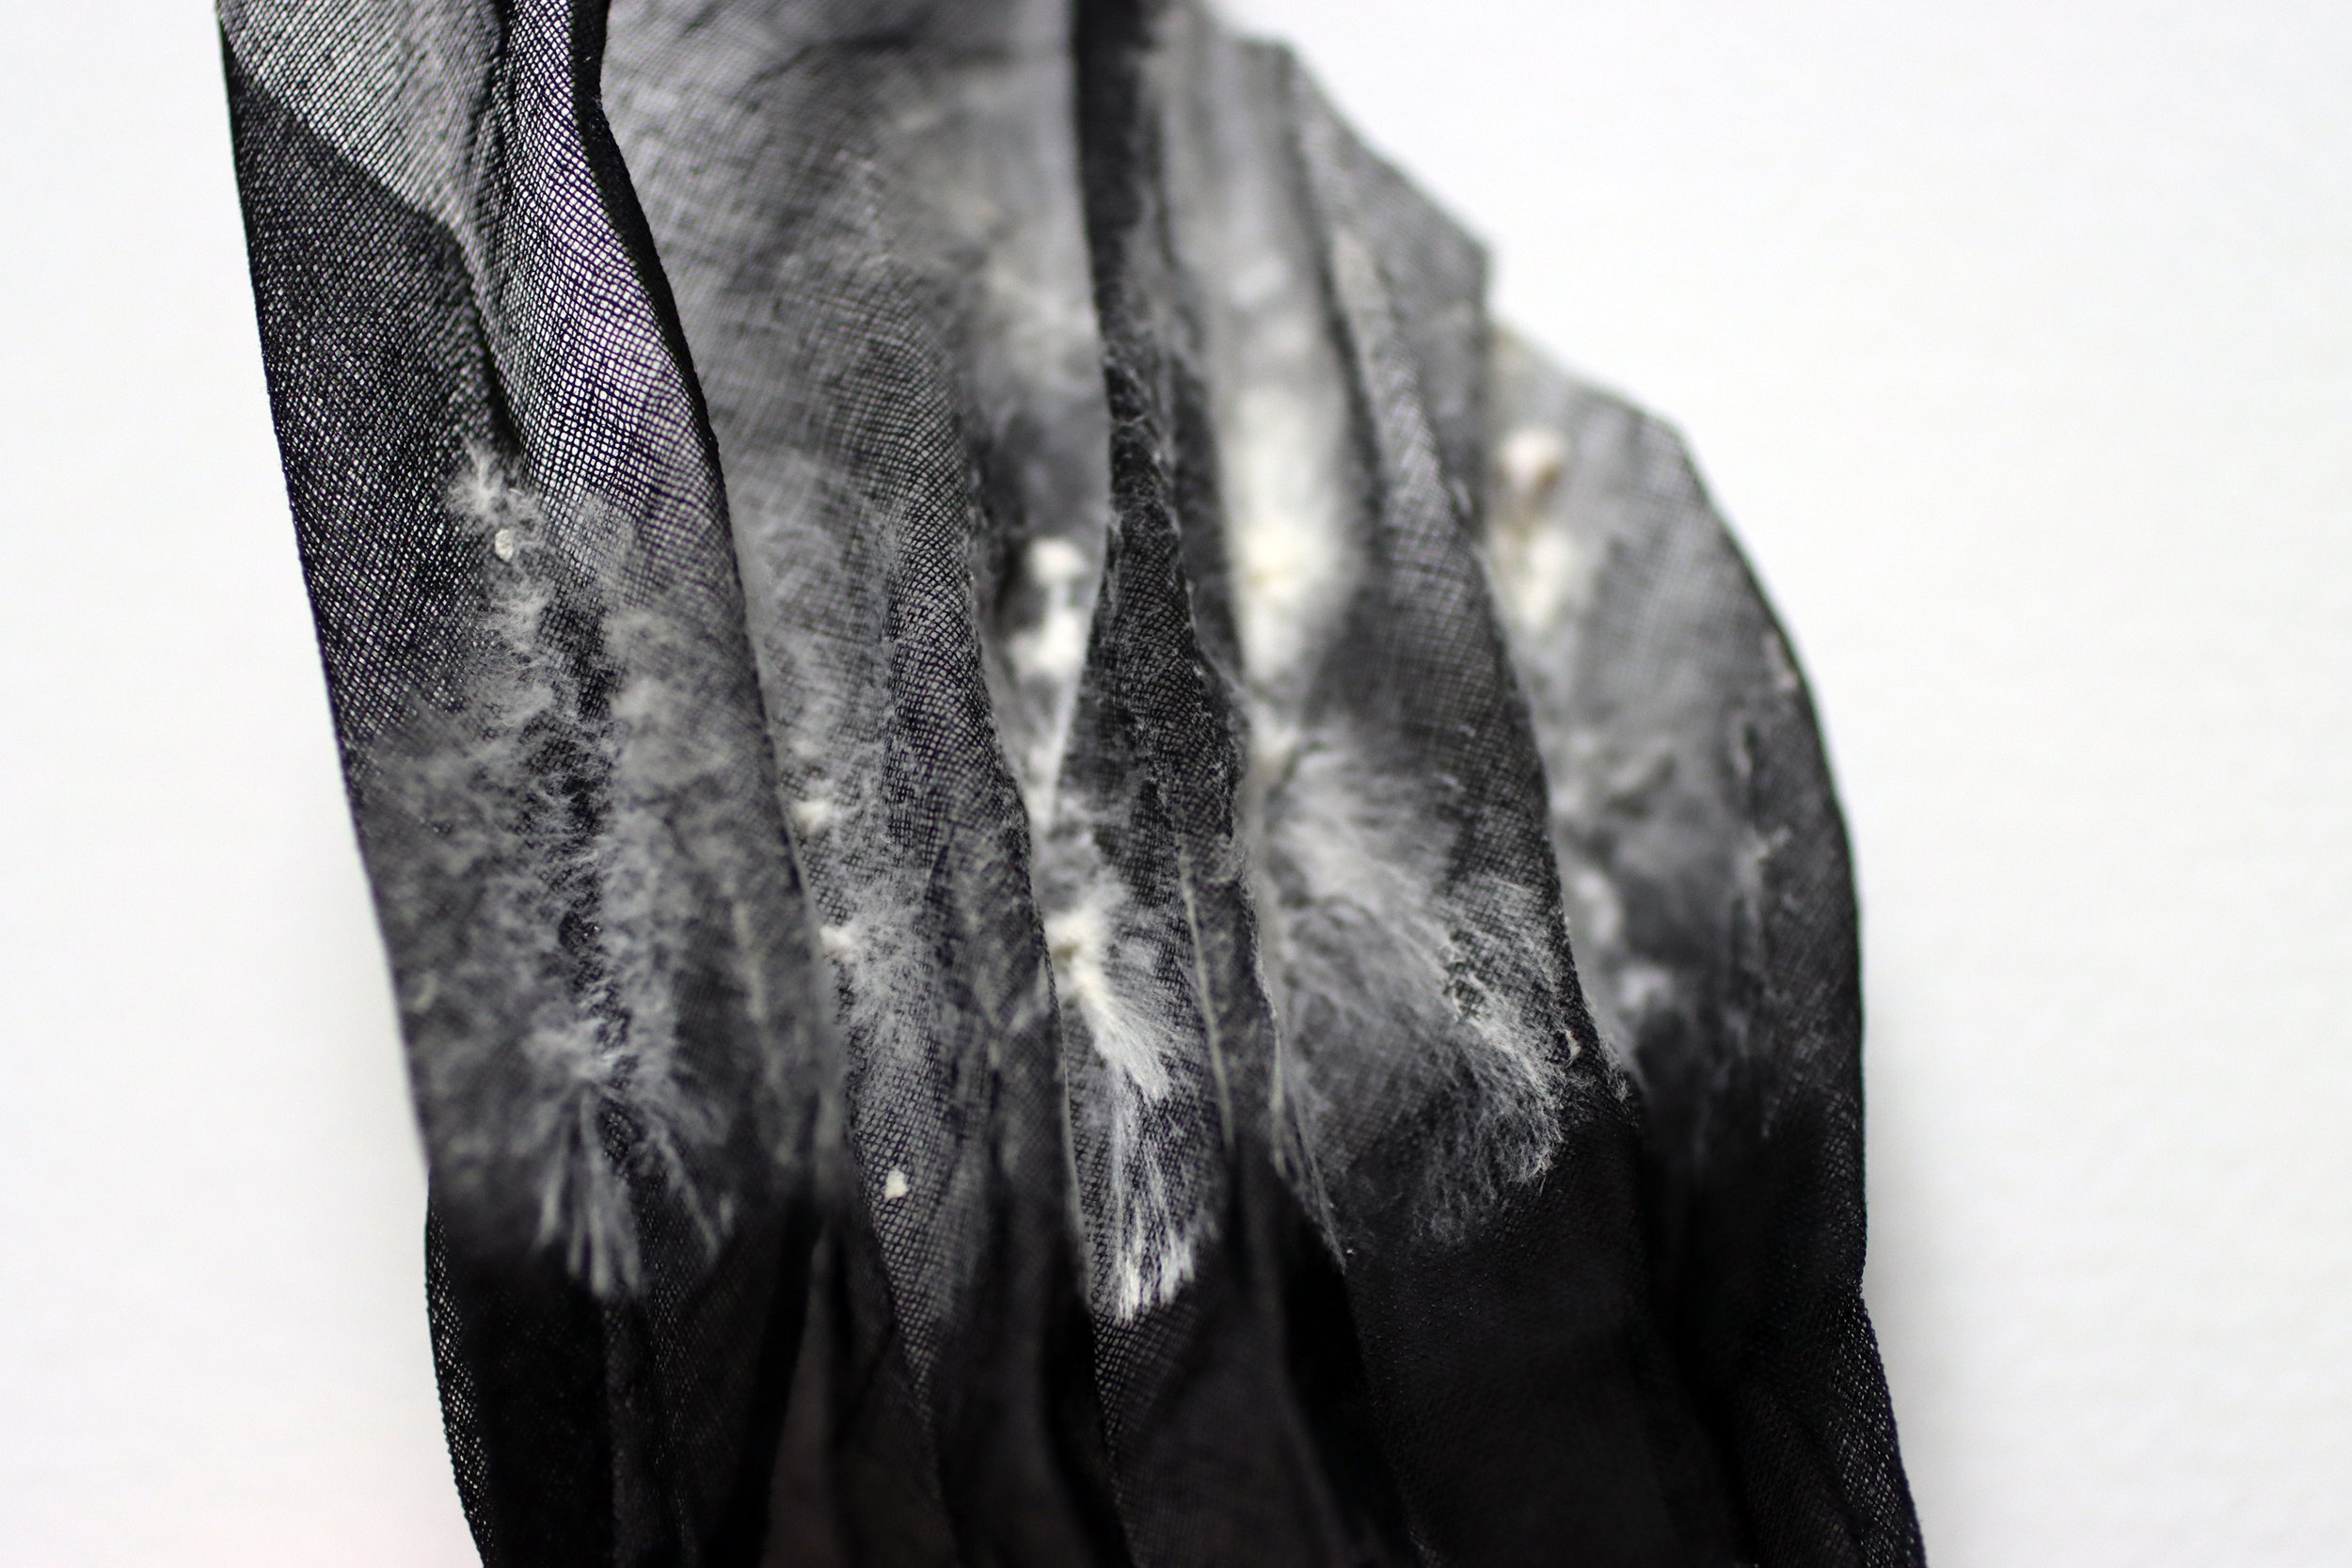 mycelium textiles -pleat detail-carole collet 2019.jpg